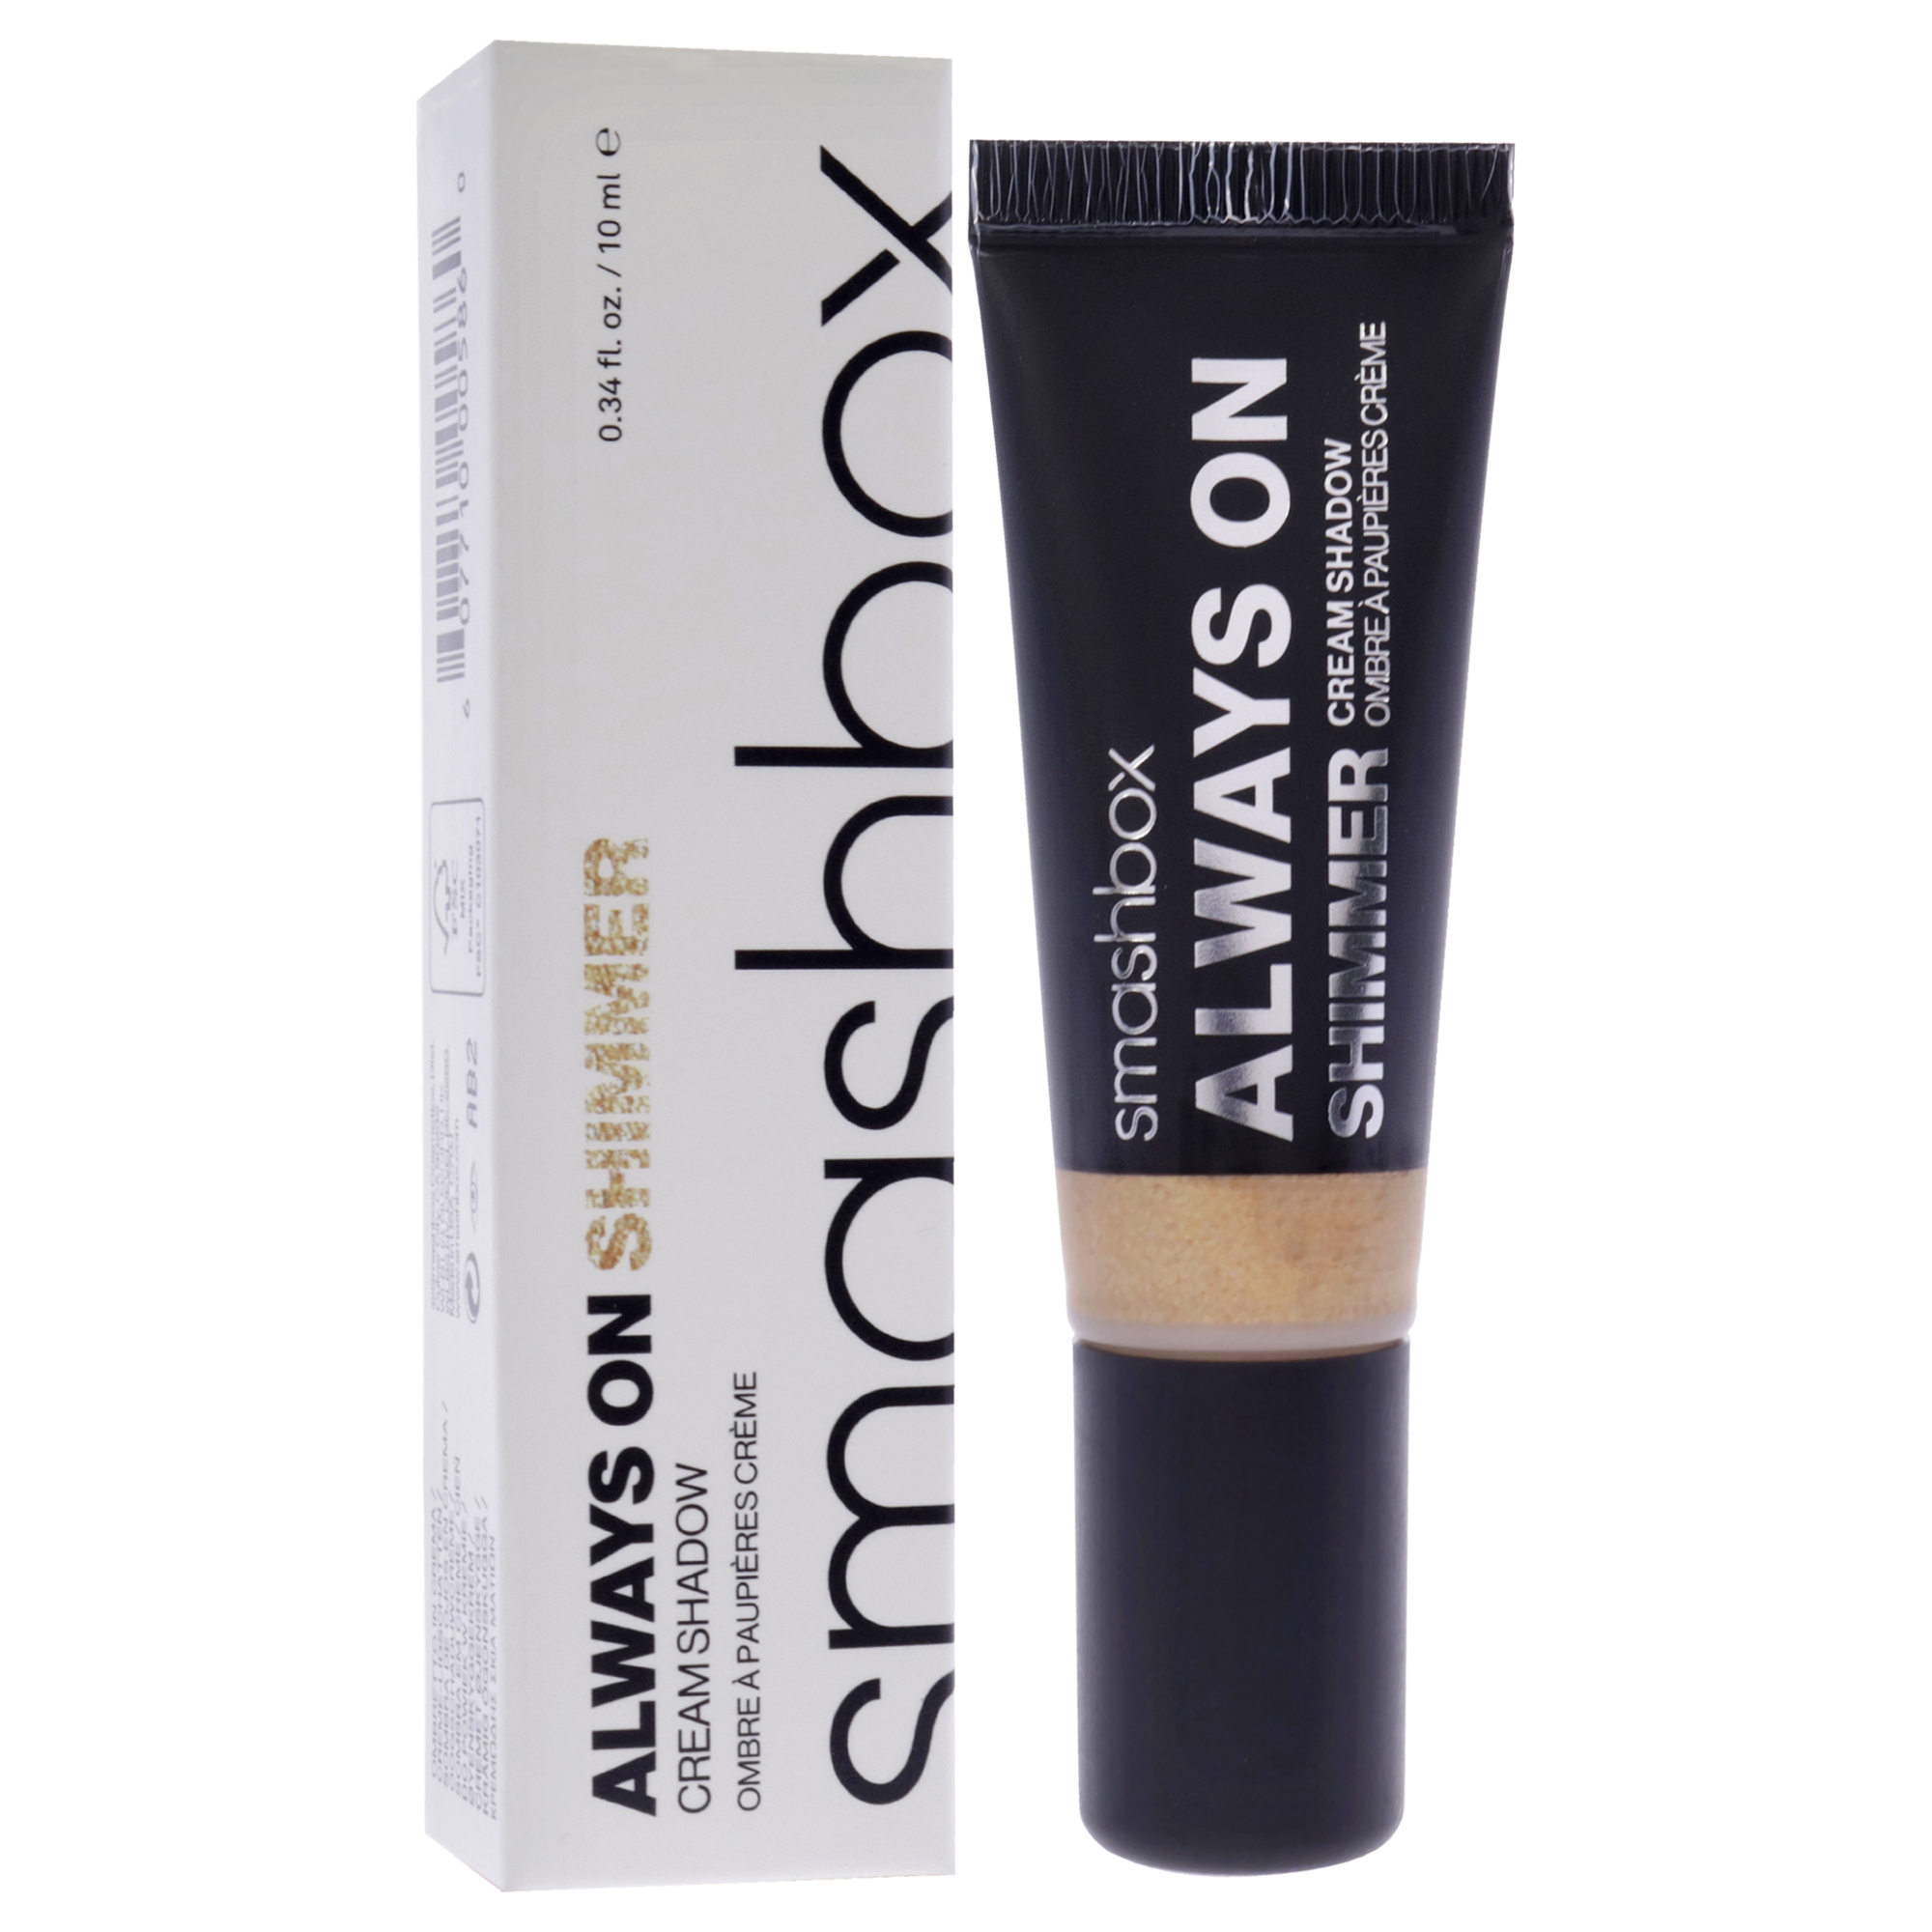 Smashbox Always On Shimmer Cream Eye Shadow - Gold by SmashBox for Women - 0.34 oz Eye Shadow